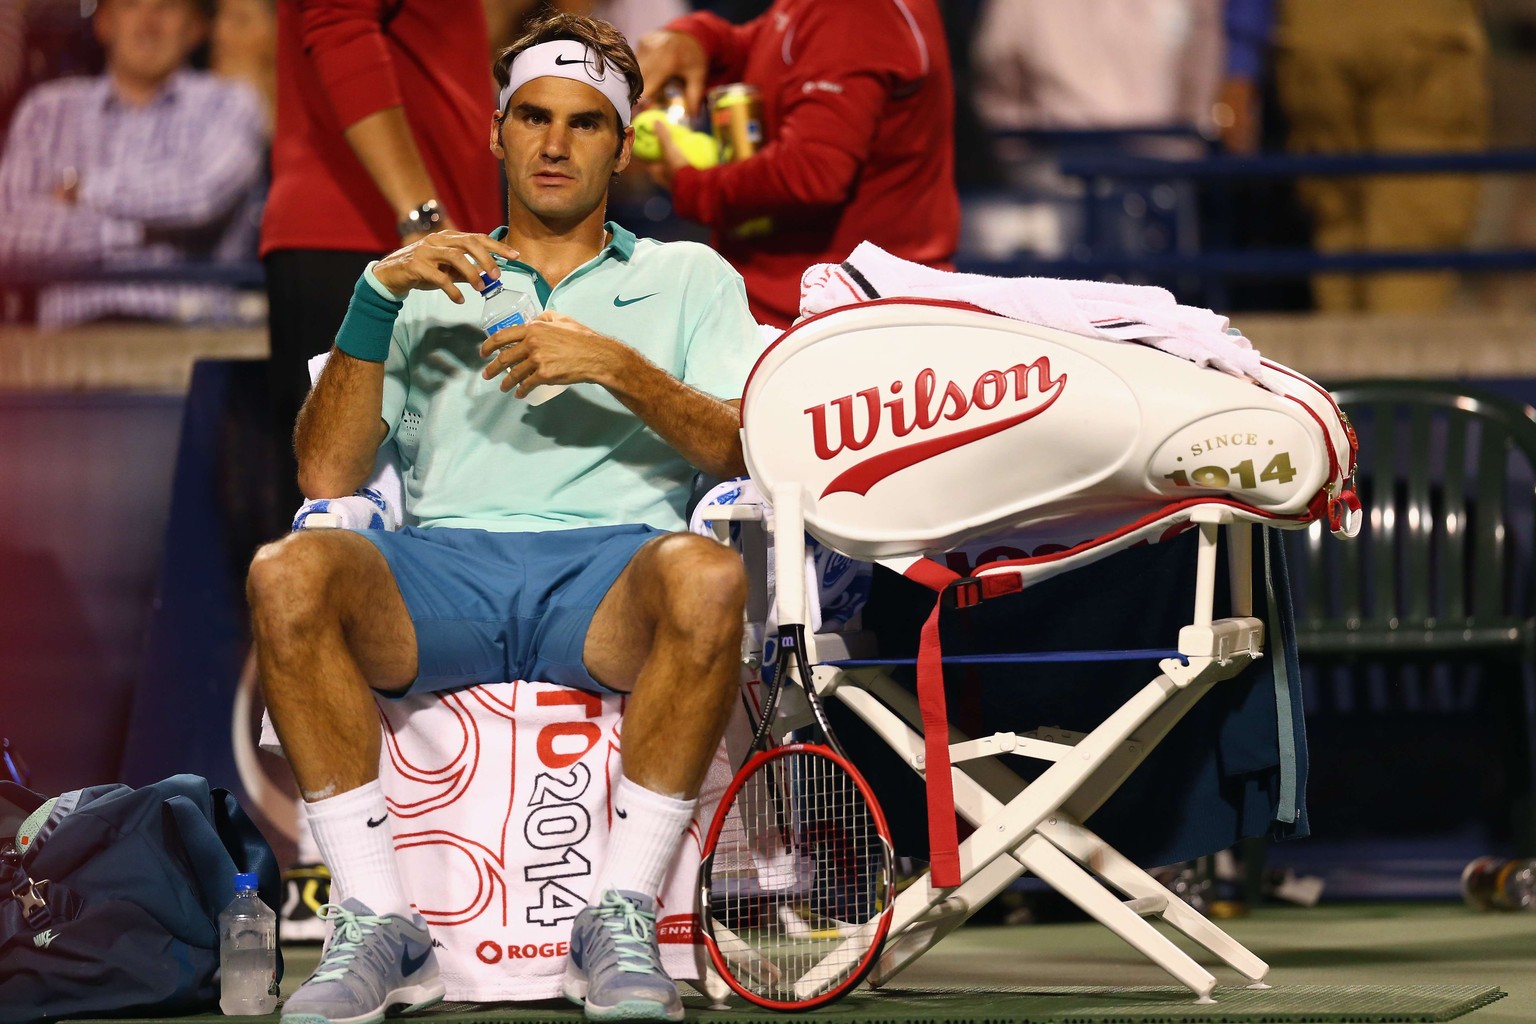 Musste sich öfters hinsetzen, als ihm lieb war: Roger Federer bei seiner umkämpften Partie gegen Cilic in Toronto.